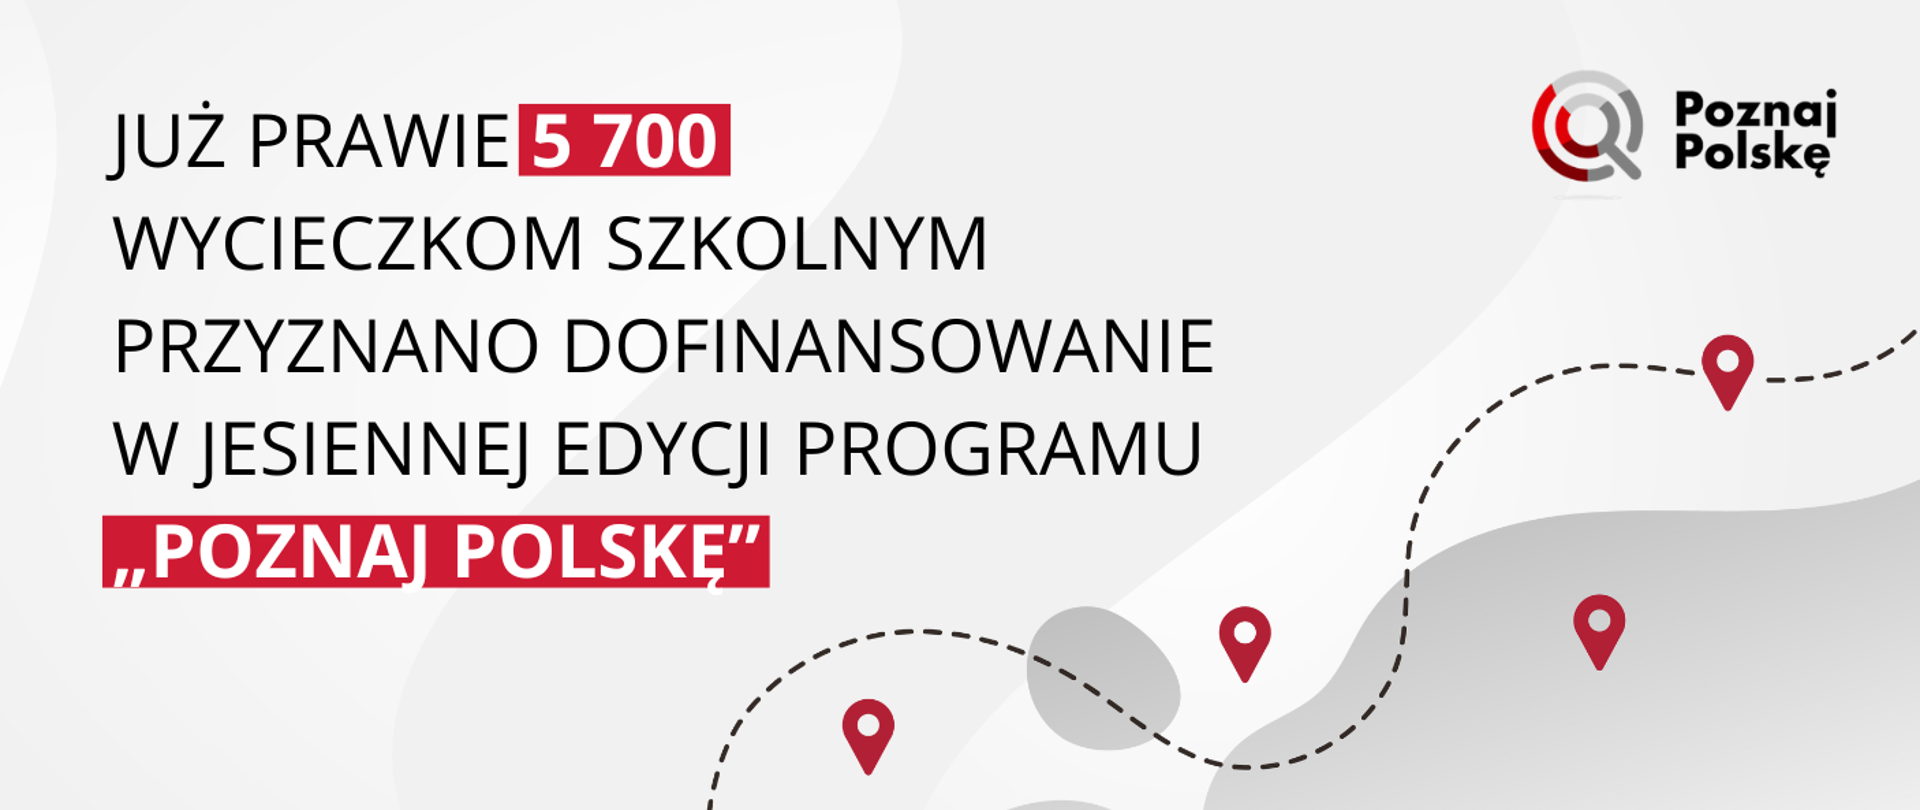 Grafika - na białym tle zarys kawałka mapy i napis Już prawie 5700 wycieczkom szkolnym przyznano dofinansowanie w jesiennej edycji programu "Poznaj Polskę".